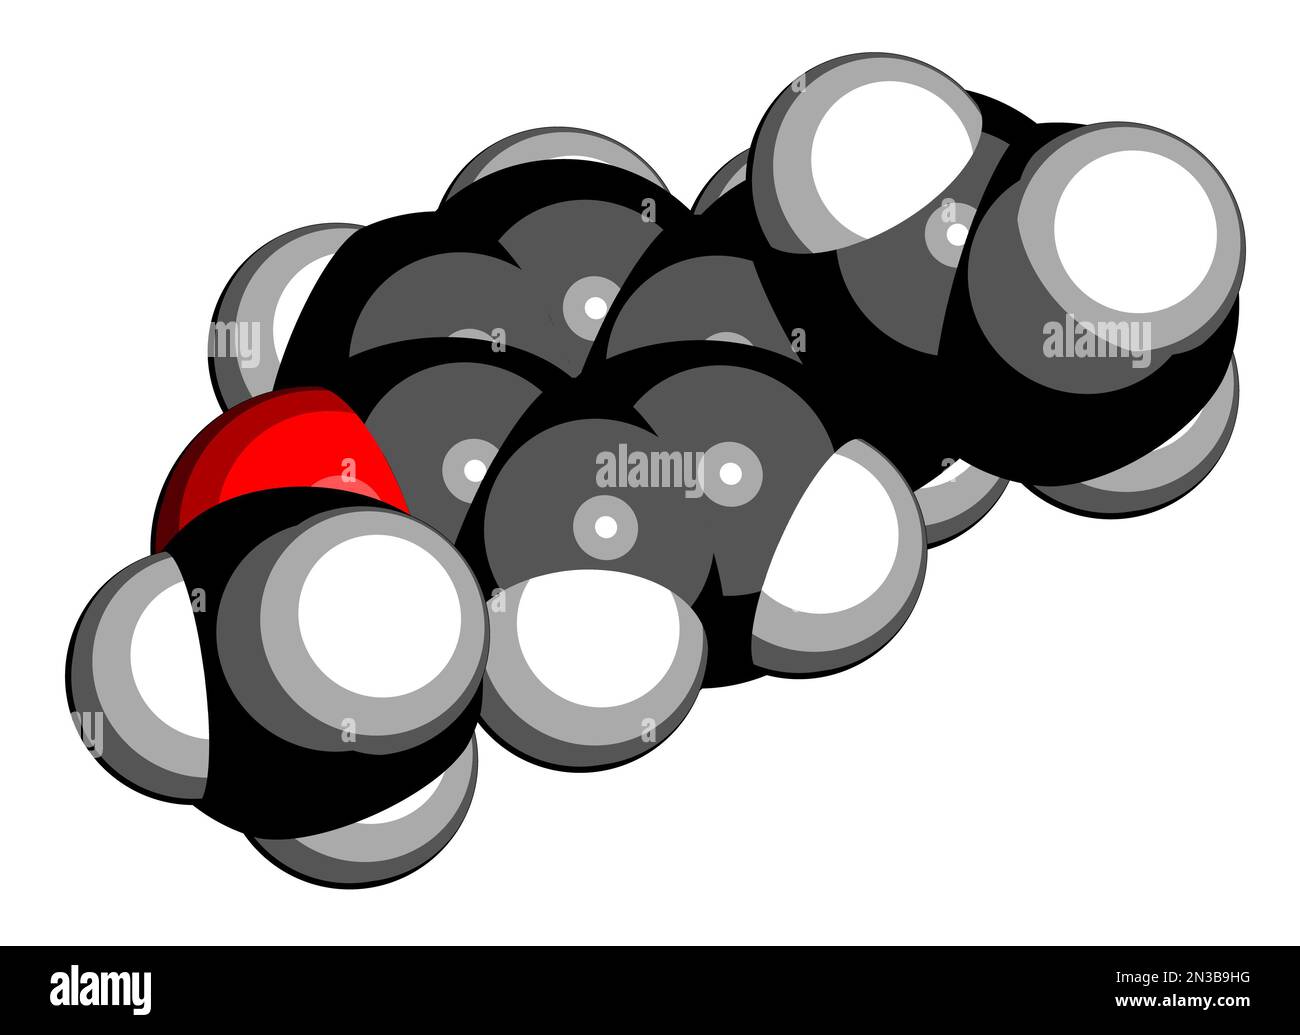 Ostragole pflanzliche Moleküle. 3D-Rendering. Atome werden als Kugeln mit herkömmlicher Farbcodierung dargestellt: Wasserstoff (weiß), Kohlenstoff (schwarz), Sauerstoff (re Stockfoto